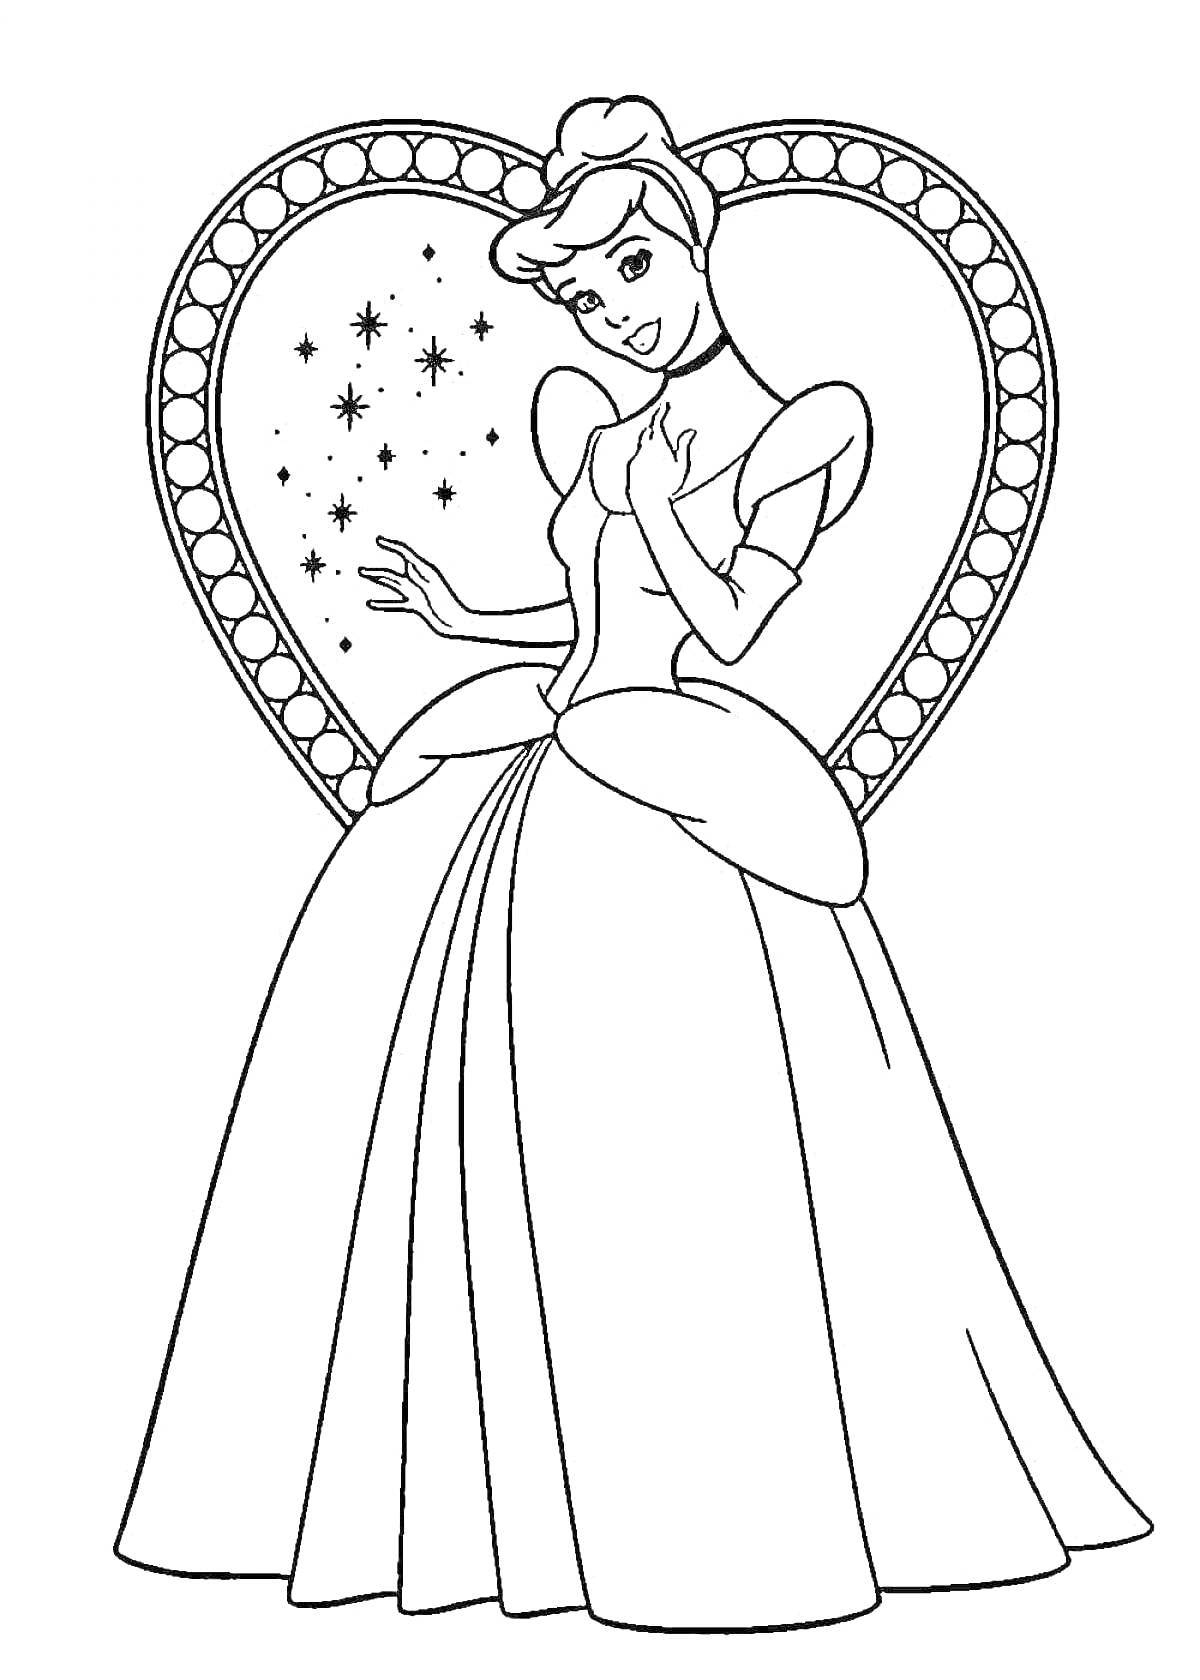 Раскраска Золушка в платье на фоне сердца с звёздочками